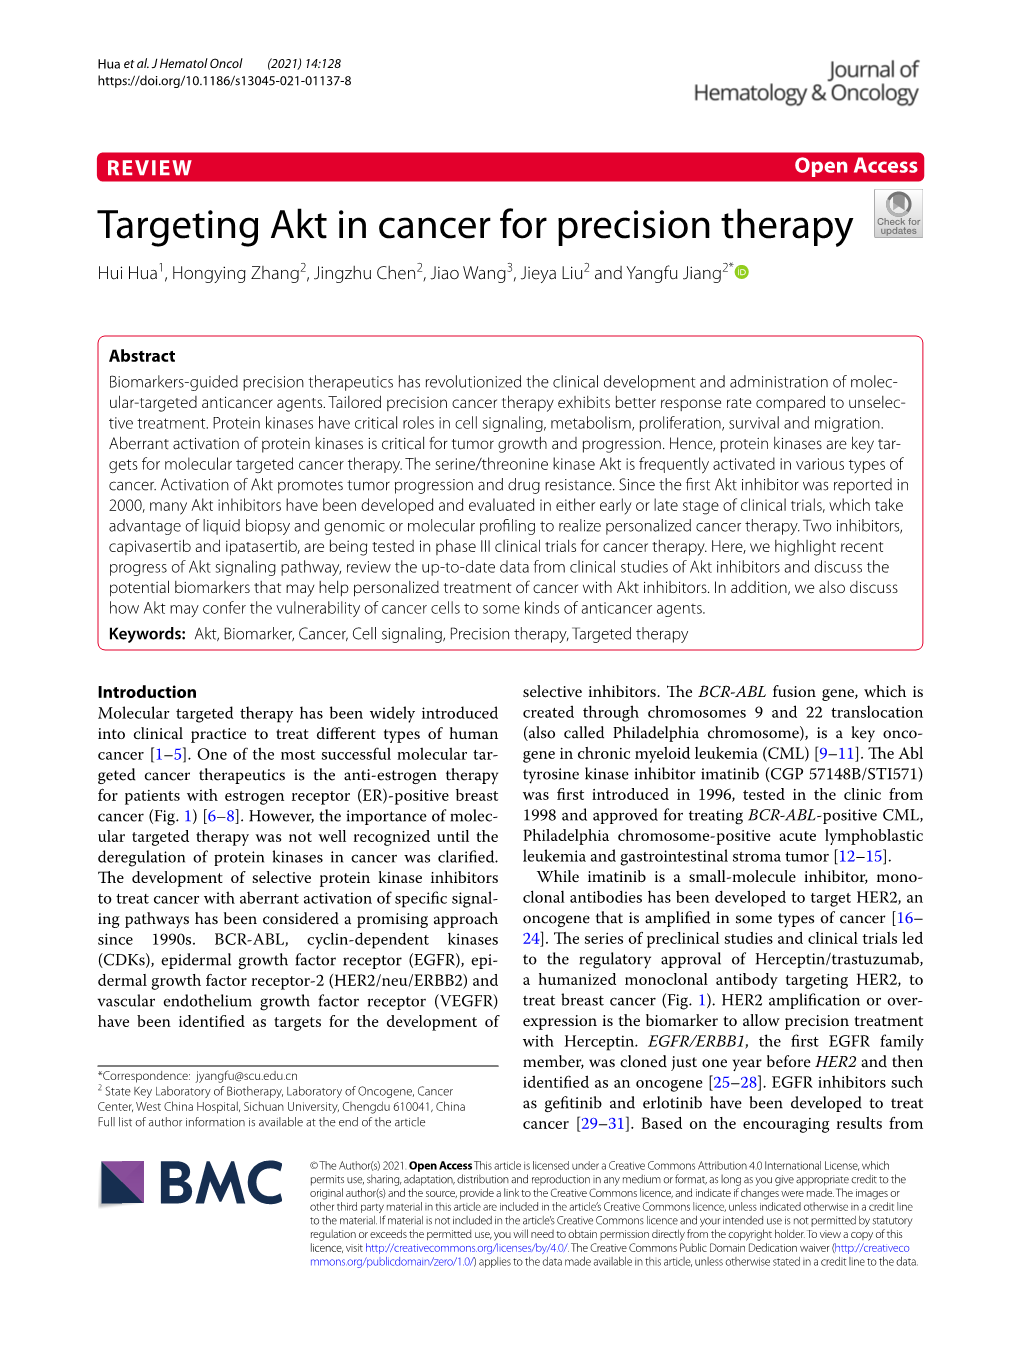 Targeting Akt in Cancer for Precision Therapy Hui Hua1, Hongying Zhang2, Jingzhu Chen2, Jiao Wang3, Jieya Liu2 and Yangfu Jiang2*